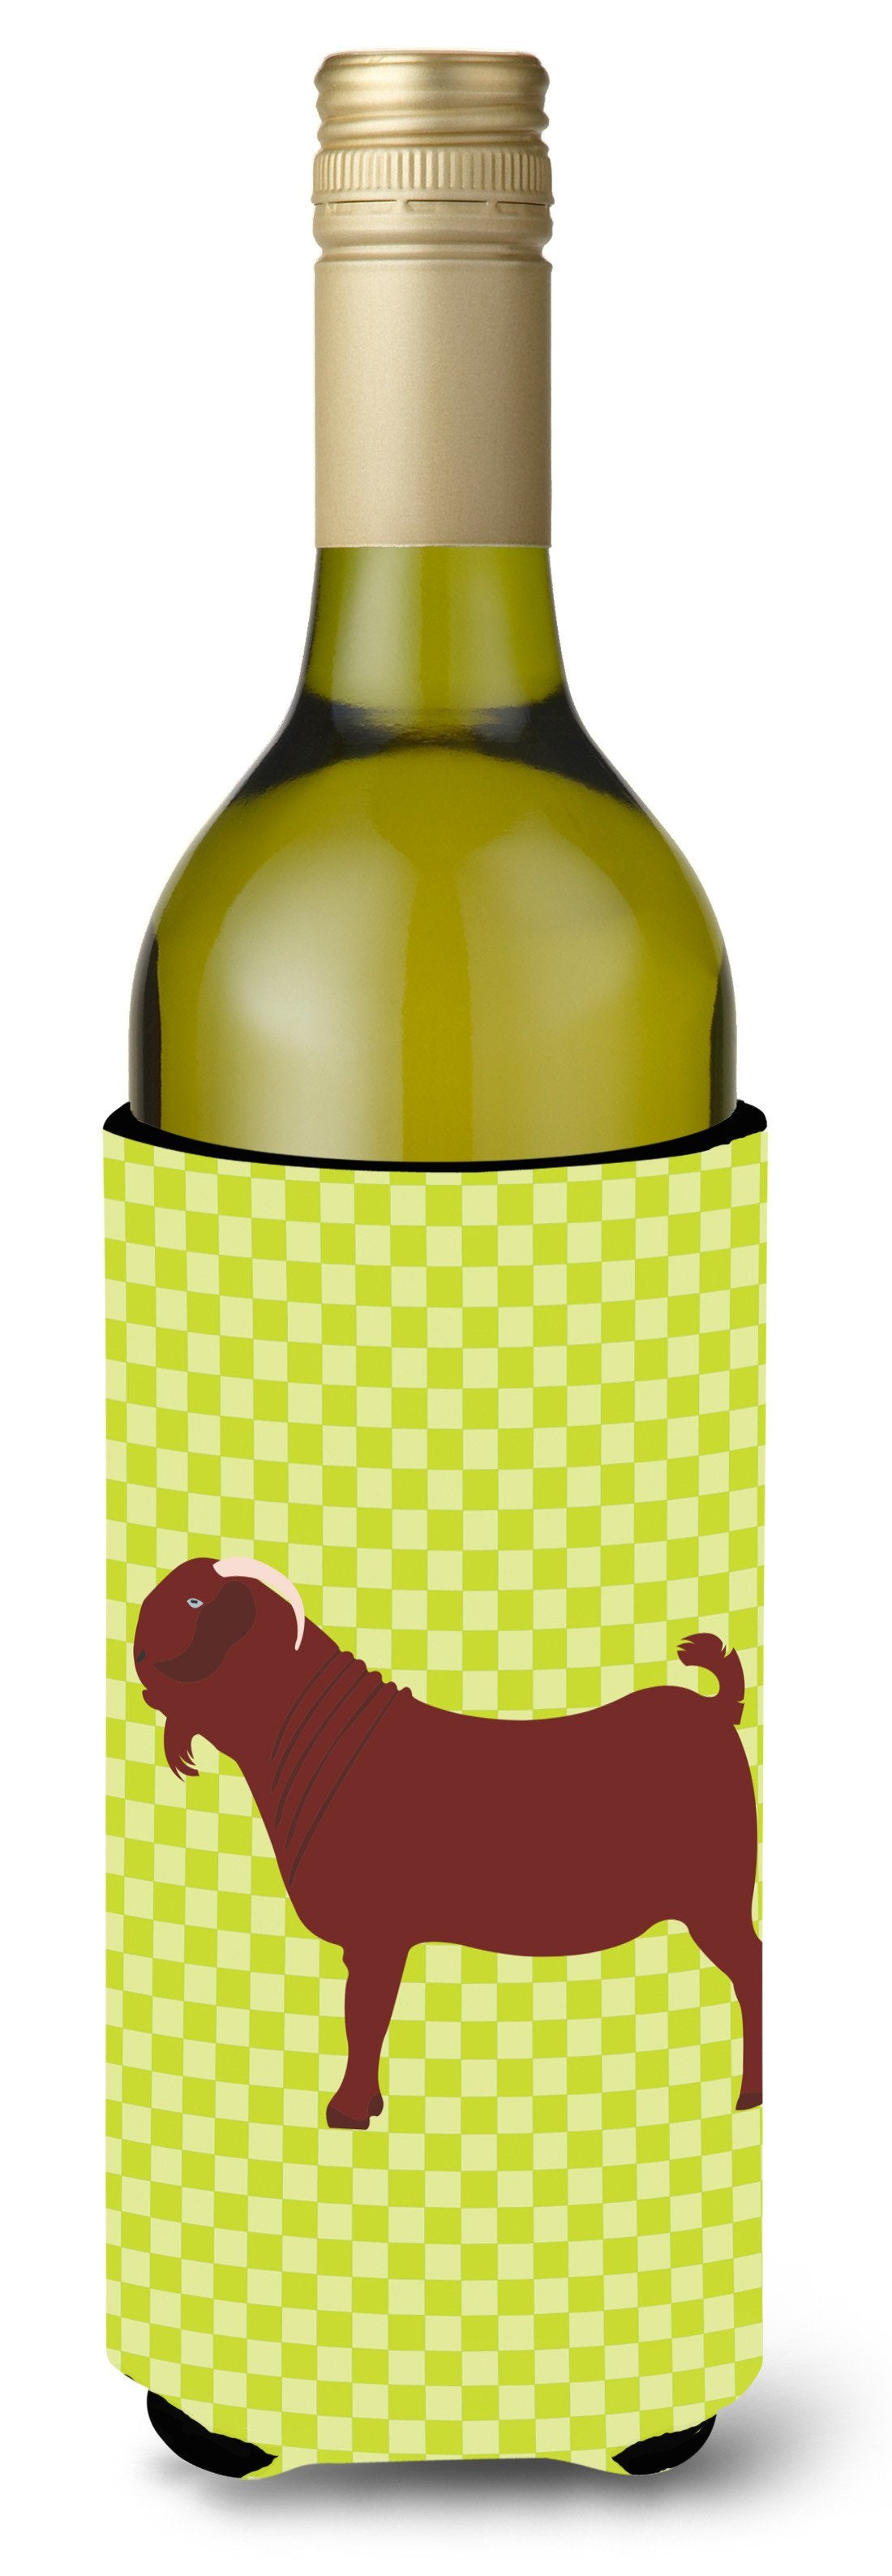 Kalahari Red Goat Green Wine Bottle Beverge Insulator Hugger BB7717LITERK by Caroline's Treasures